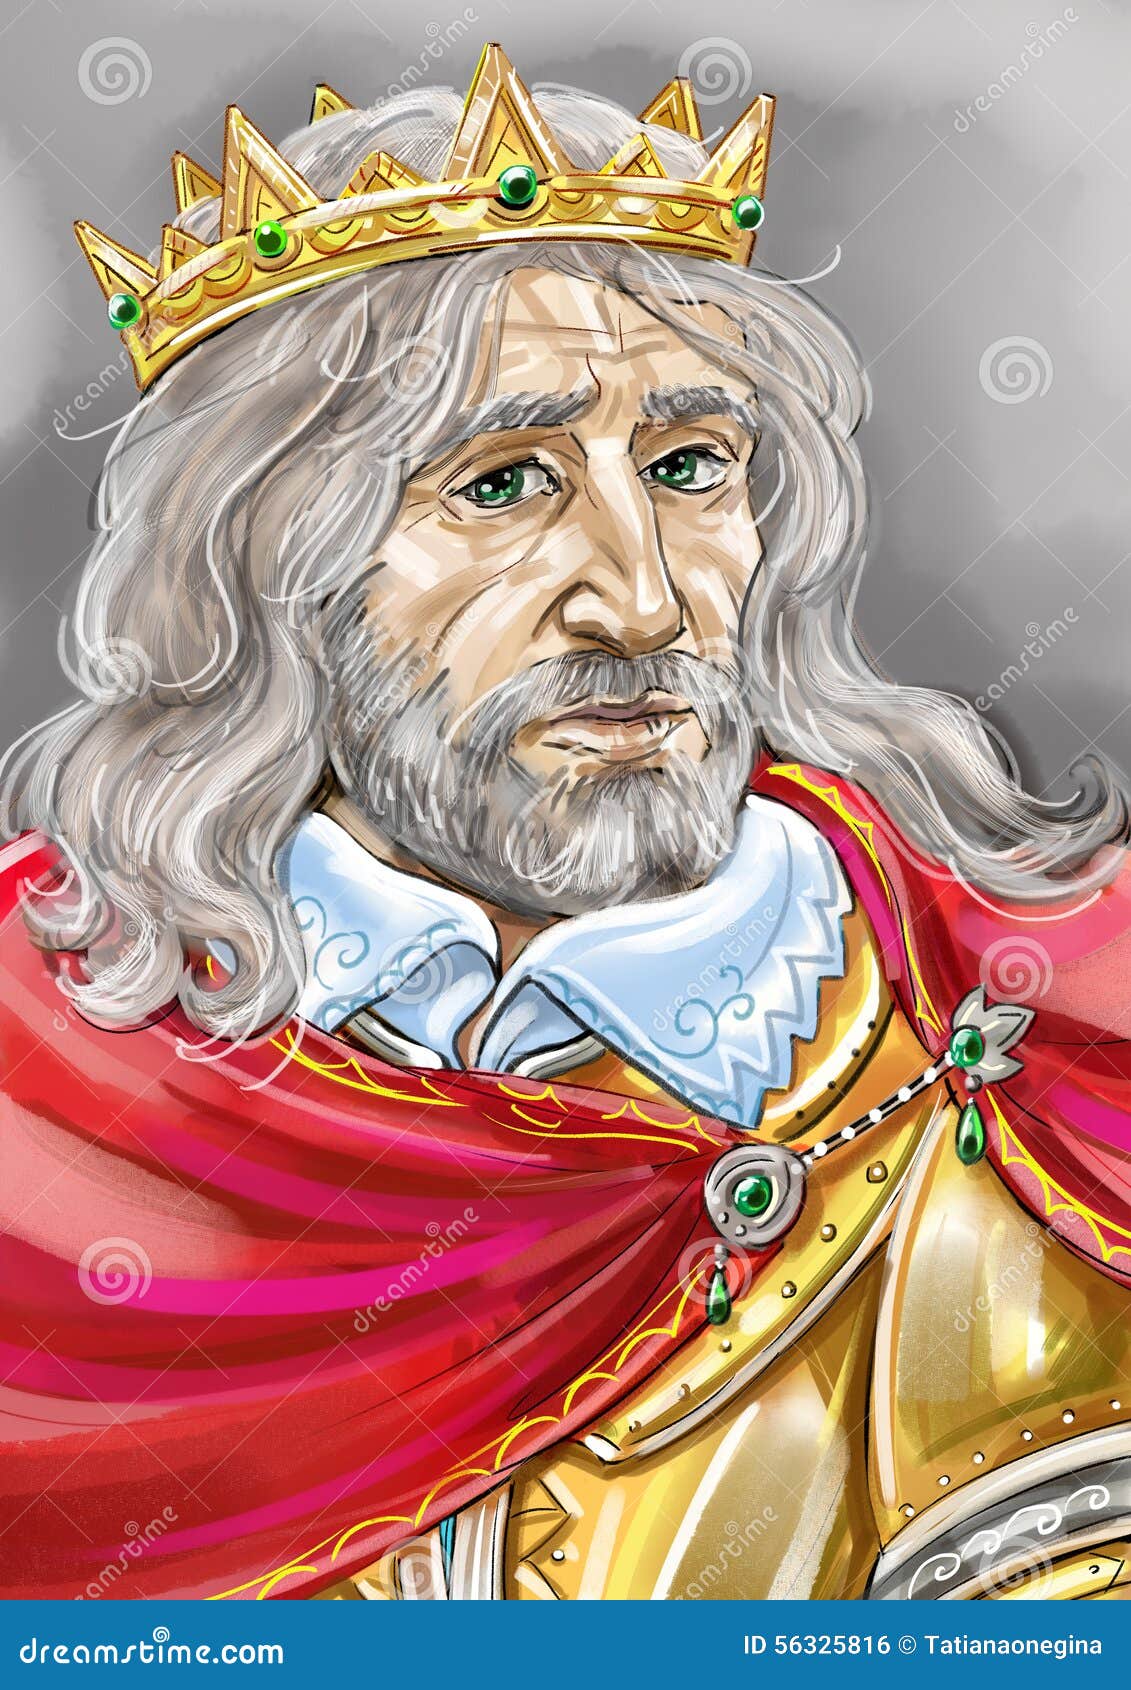 old-king-artistic-portrait-oldl-fantasy-56325816.jpg